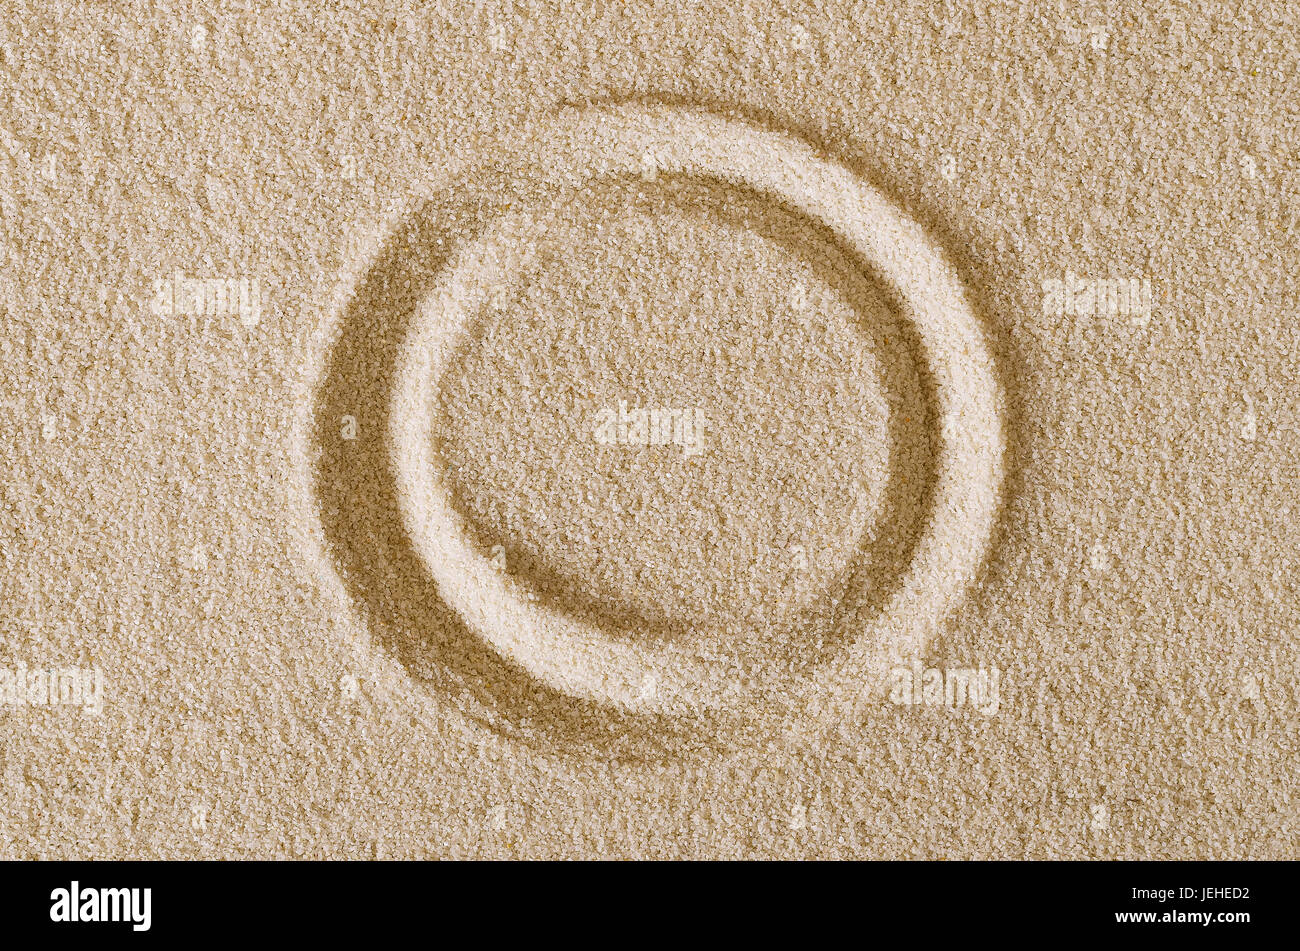 Forma di cerchio imprint in superficie di sabbia. Una curva chiusa, un anello o un disco in una forma rettangolare piatta area di sabbia. Pittogramma e segno. Foto macro close up. Foto Stock